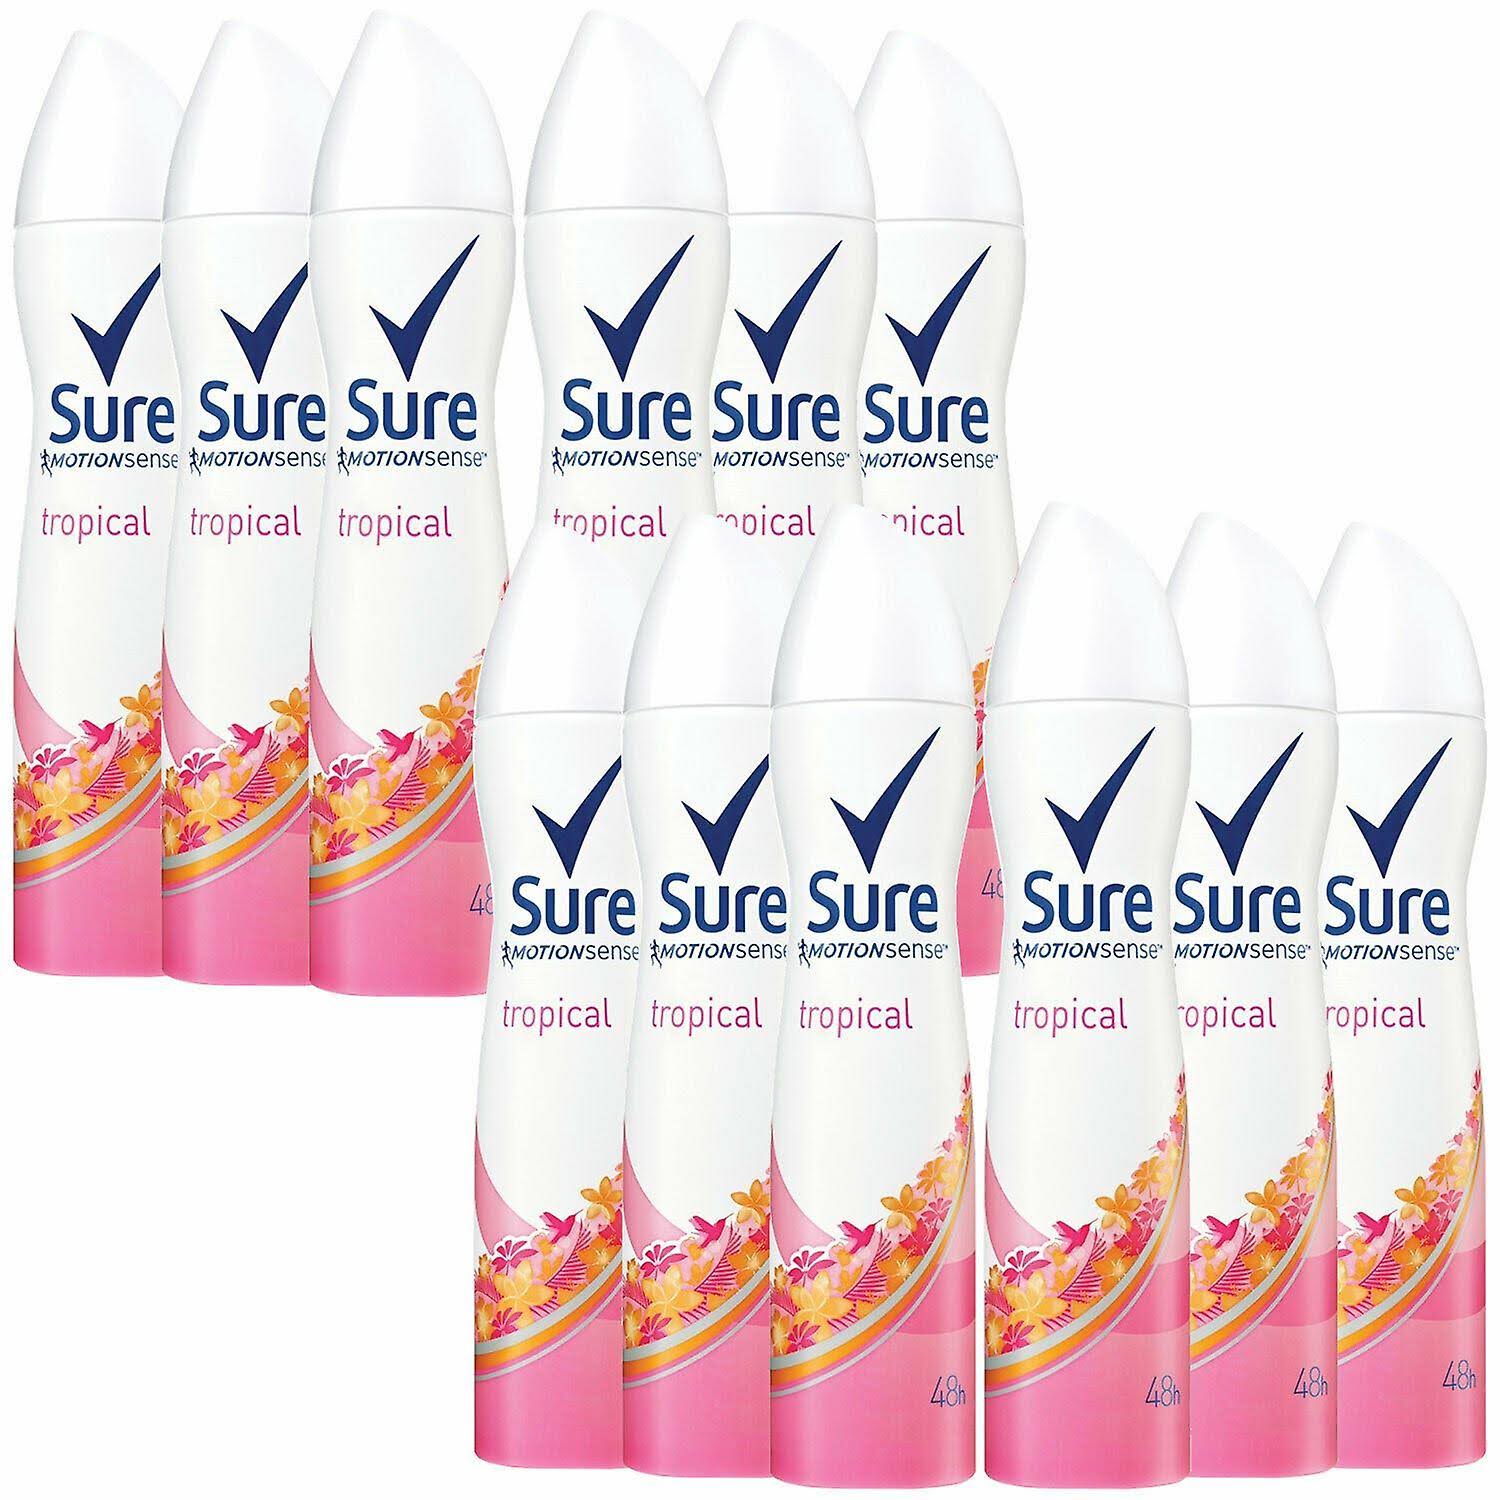 Sure Women Motion Sense Antiperspirant Deodorant, Tropical, 6 Pack, 250ml